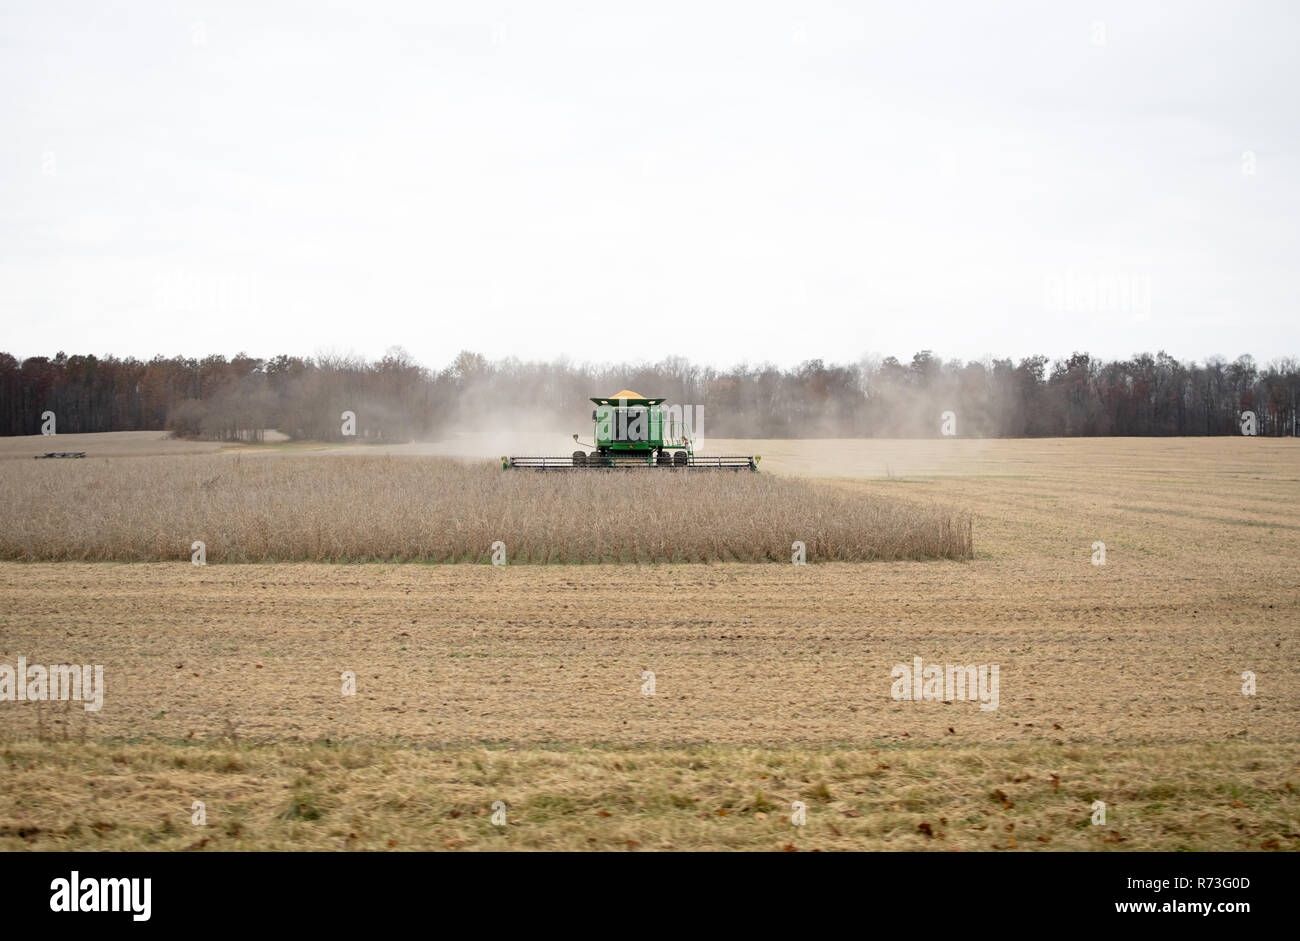 A John Deere per la raccolta di mais in una giornata grigia. Foto Stock